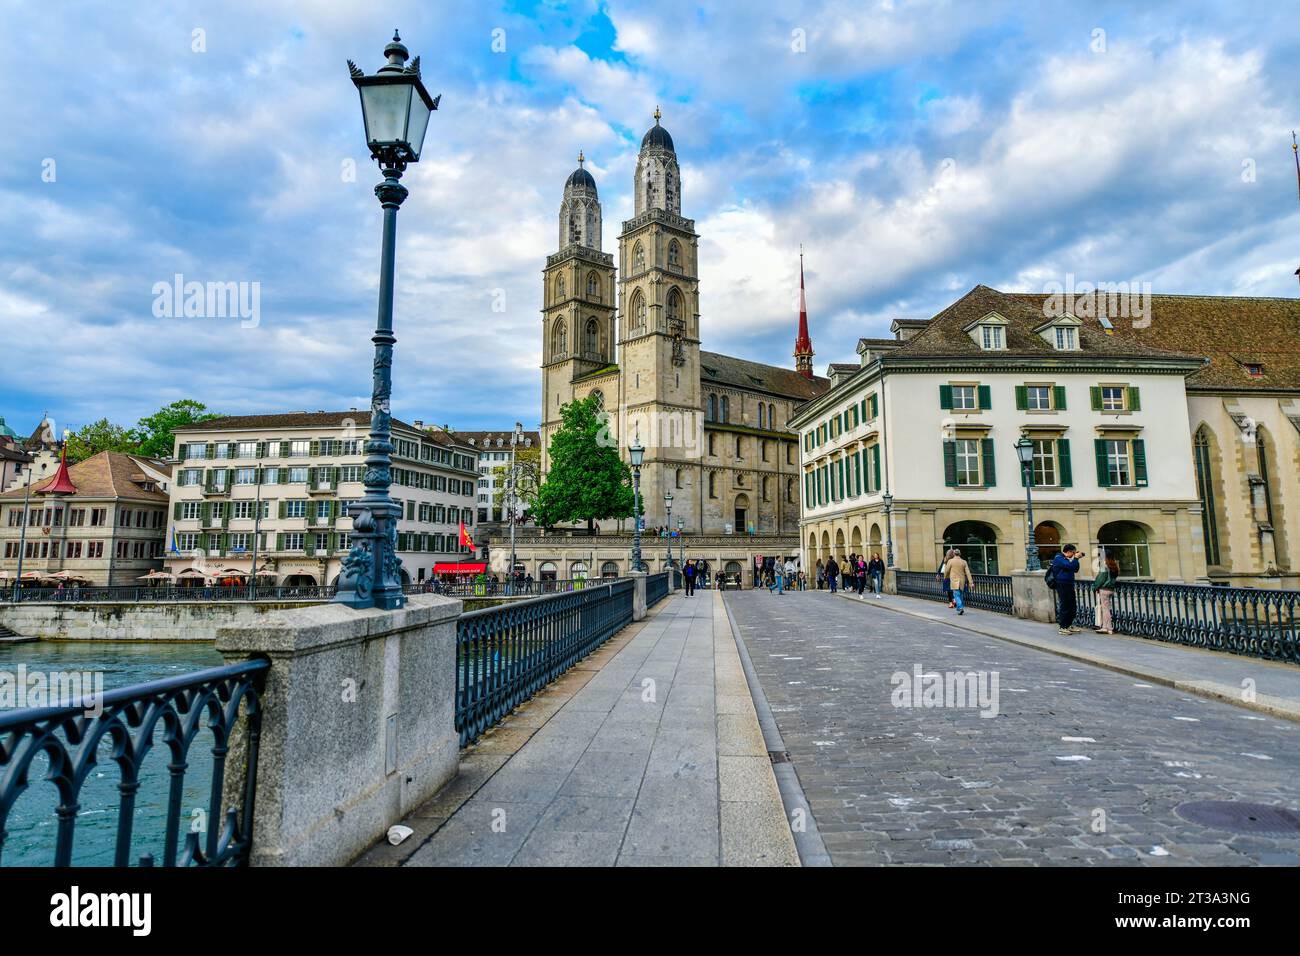 Vue panoramique sur le centre-ville historique de Zurich avec l'église Grossmunster et la rivière limmat, Suisse Banque D'Images